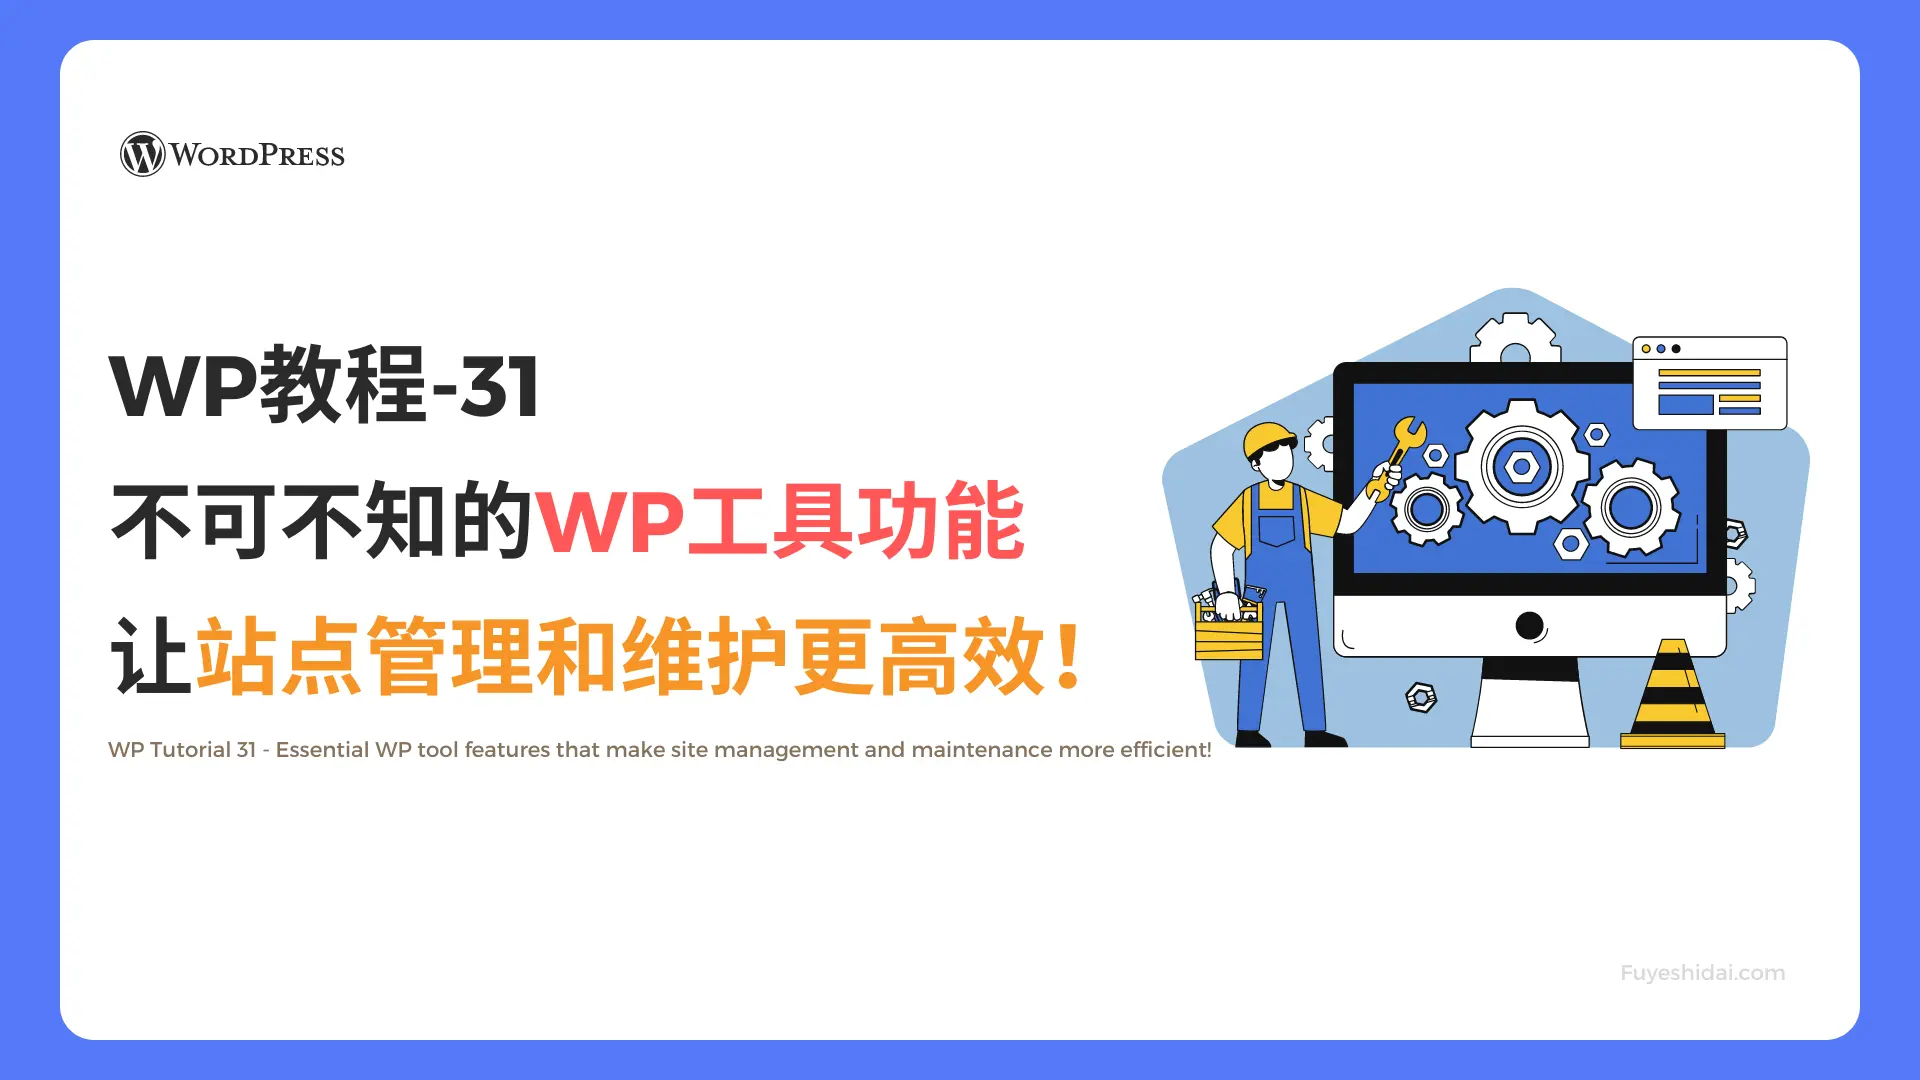 Wordpress插件与设计 - WP教程 31 - 不可不知的WP工具功能，让站点管理和维护更高效！ - 特色图片